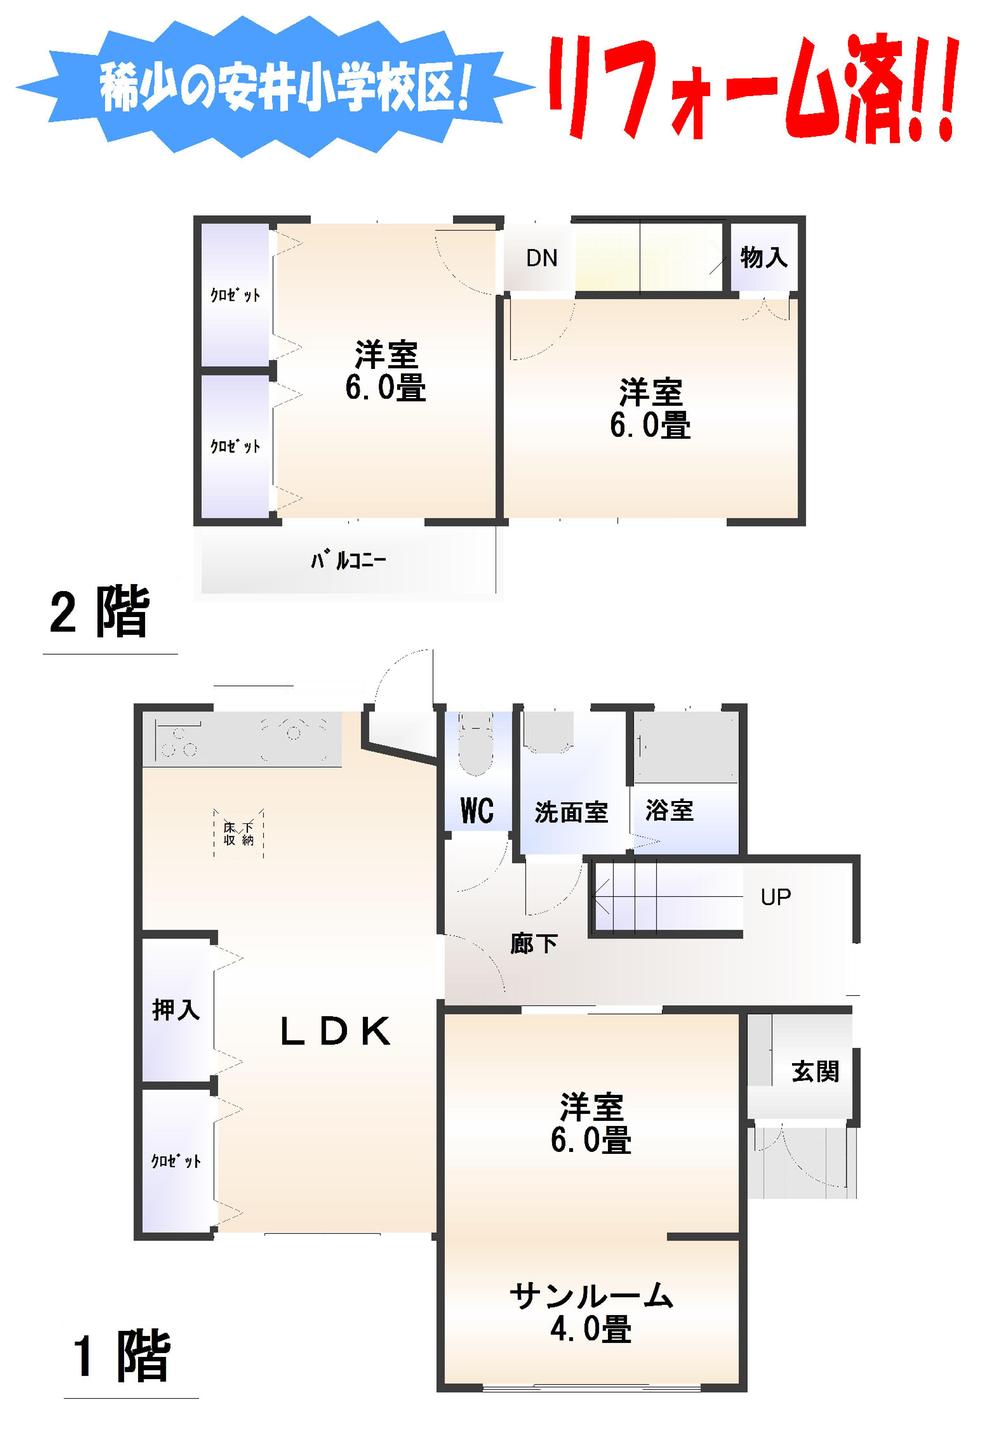 Floor plan. 12.8 million yen, 3LDK, Land area 134.38 sq m , Building area 77.21 sq m